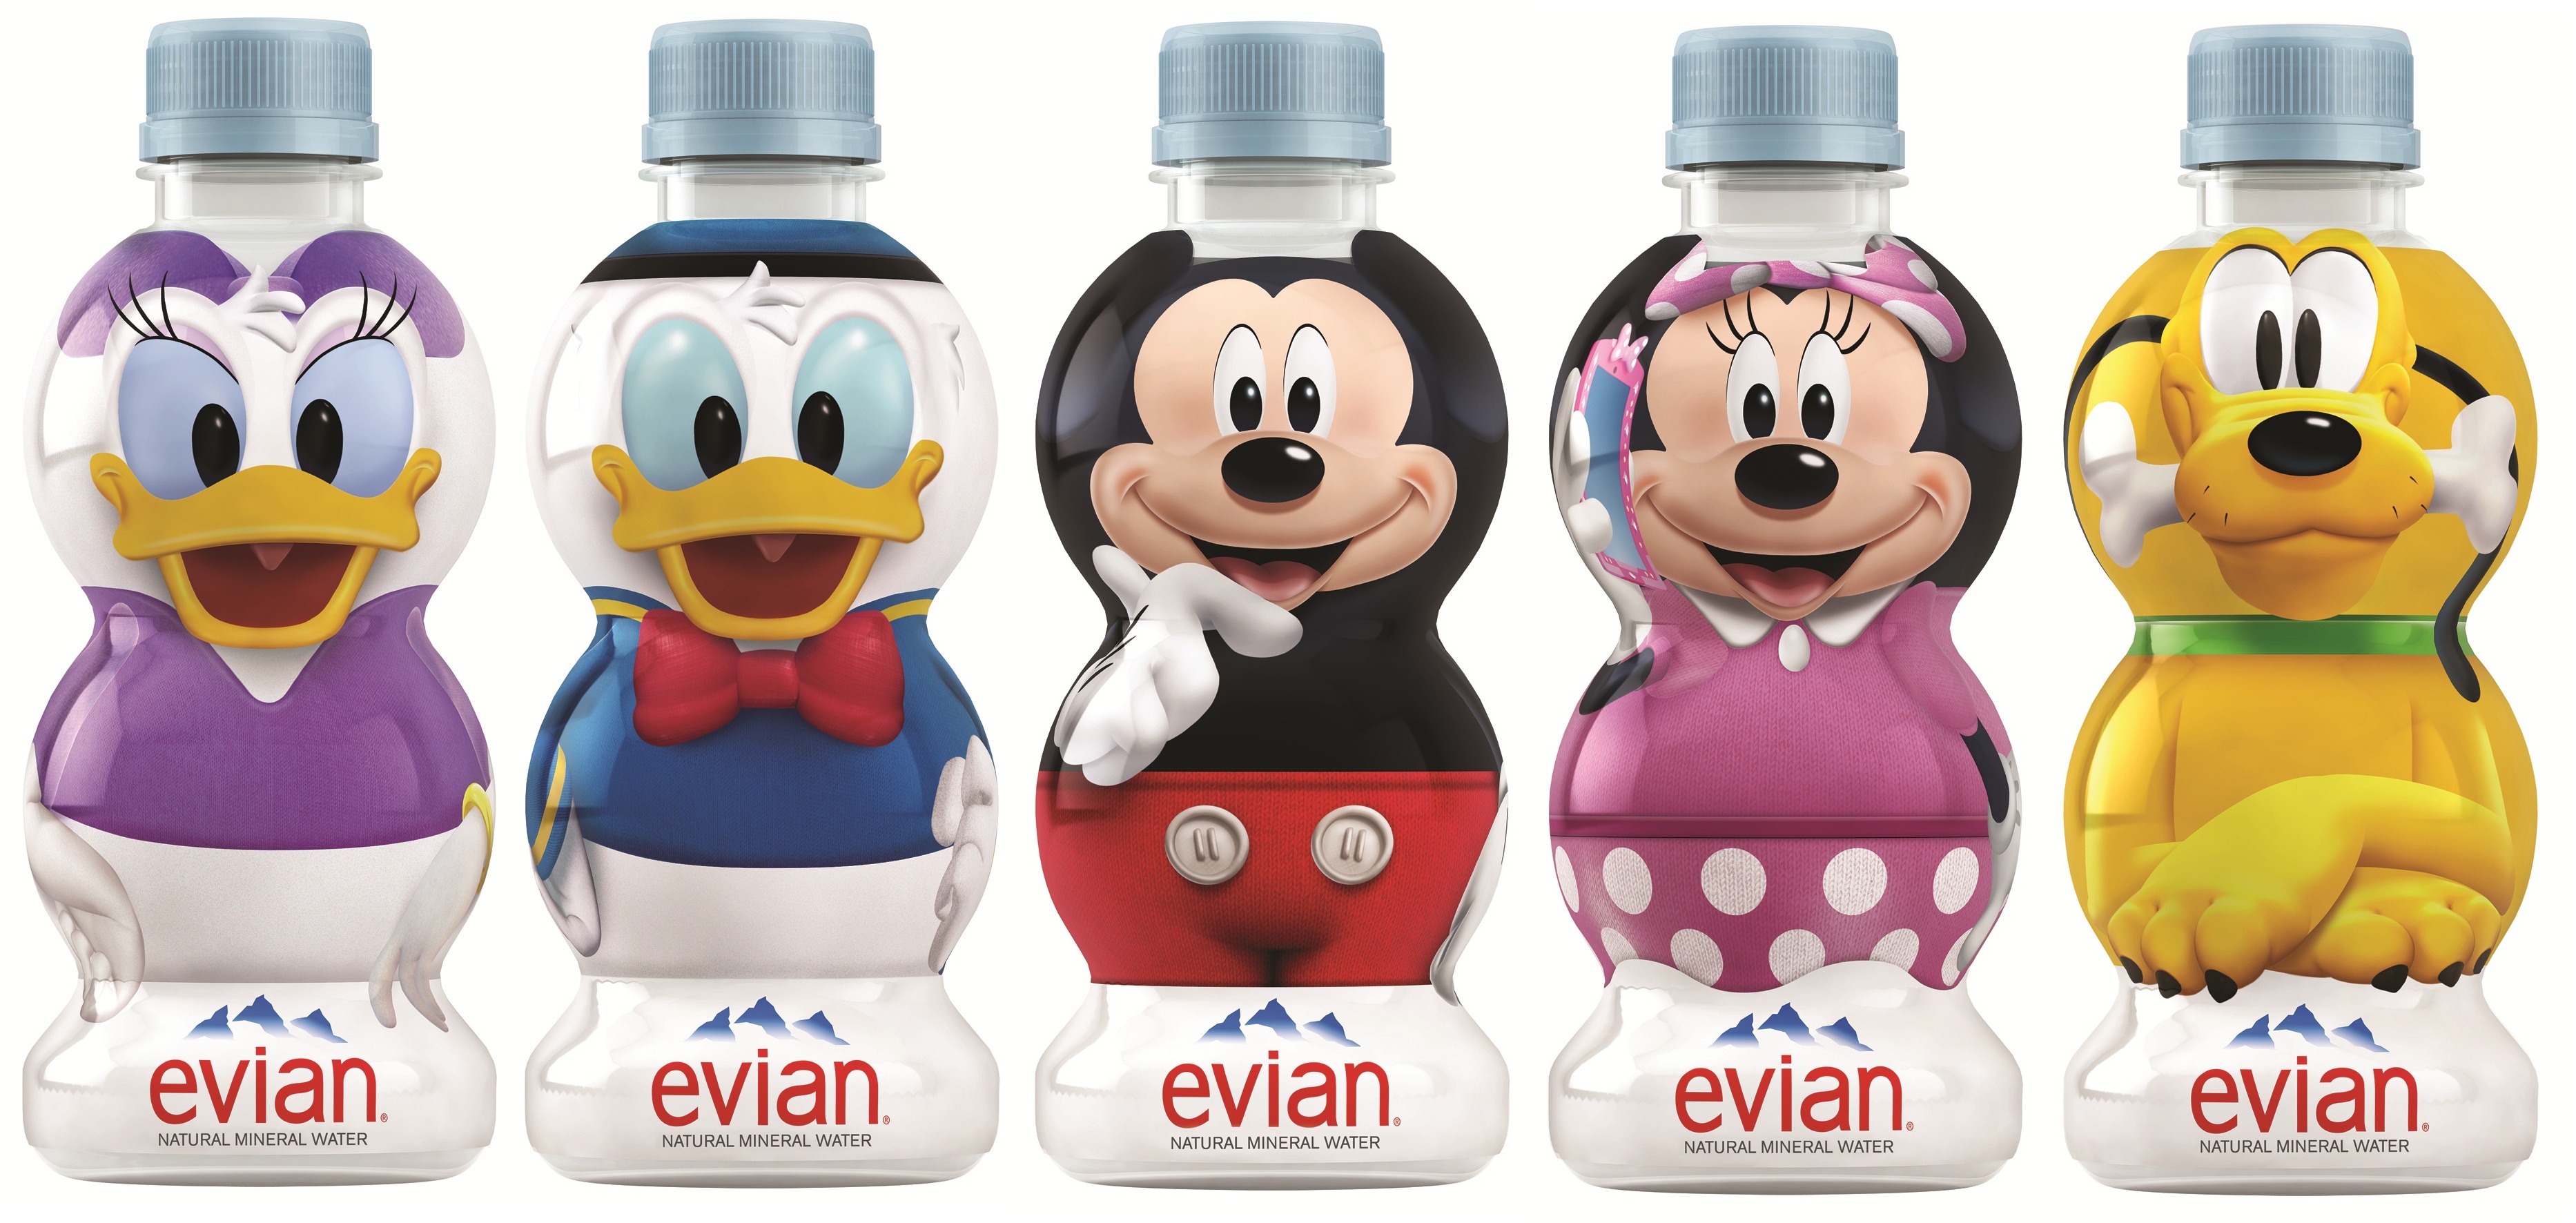 エビアン ディズニーデザインボトル 2月19日 月 より販売開始 ニュースリリース 伊藤園